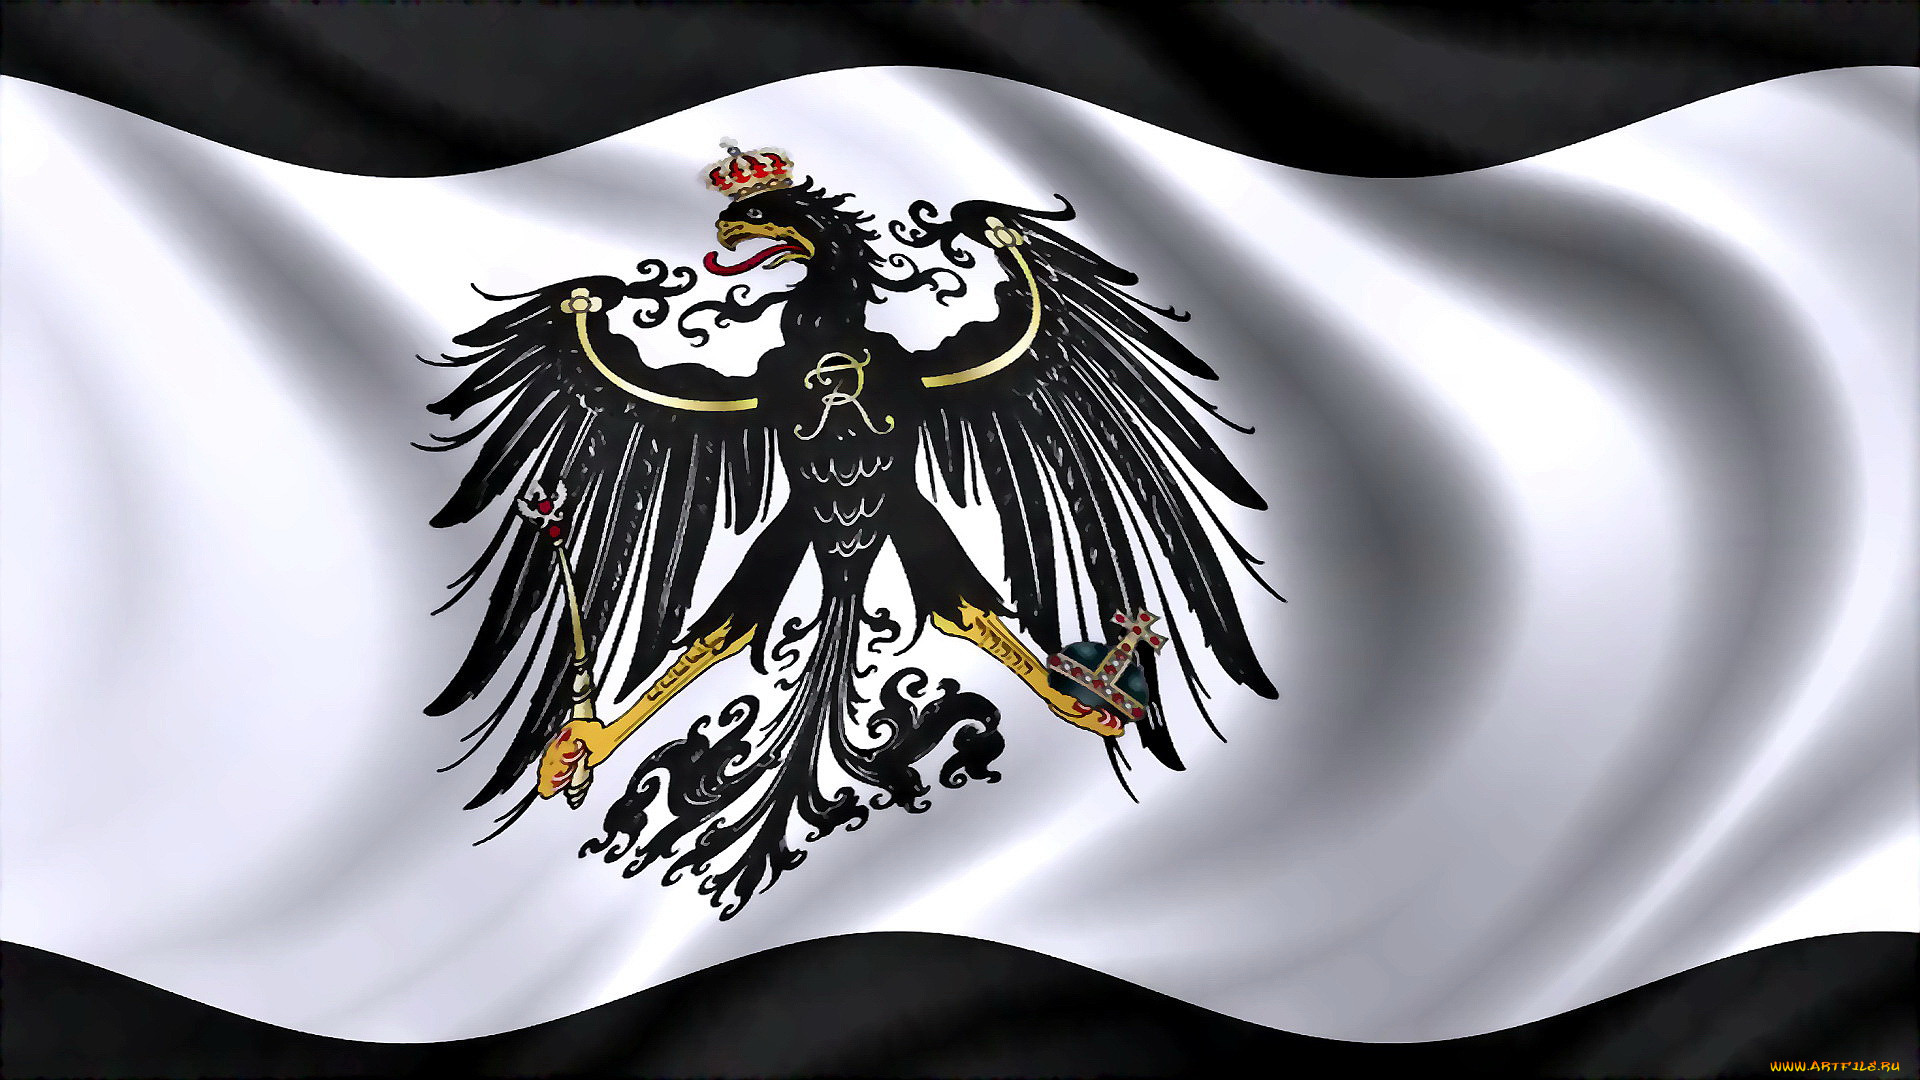 Пруссия какое государство. Флаг Пруссии флаг Пруссии. Флаг Пруссии 18 века. Пруссия флаг и герб. Королевство Пруссия флаг.